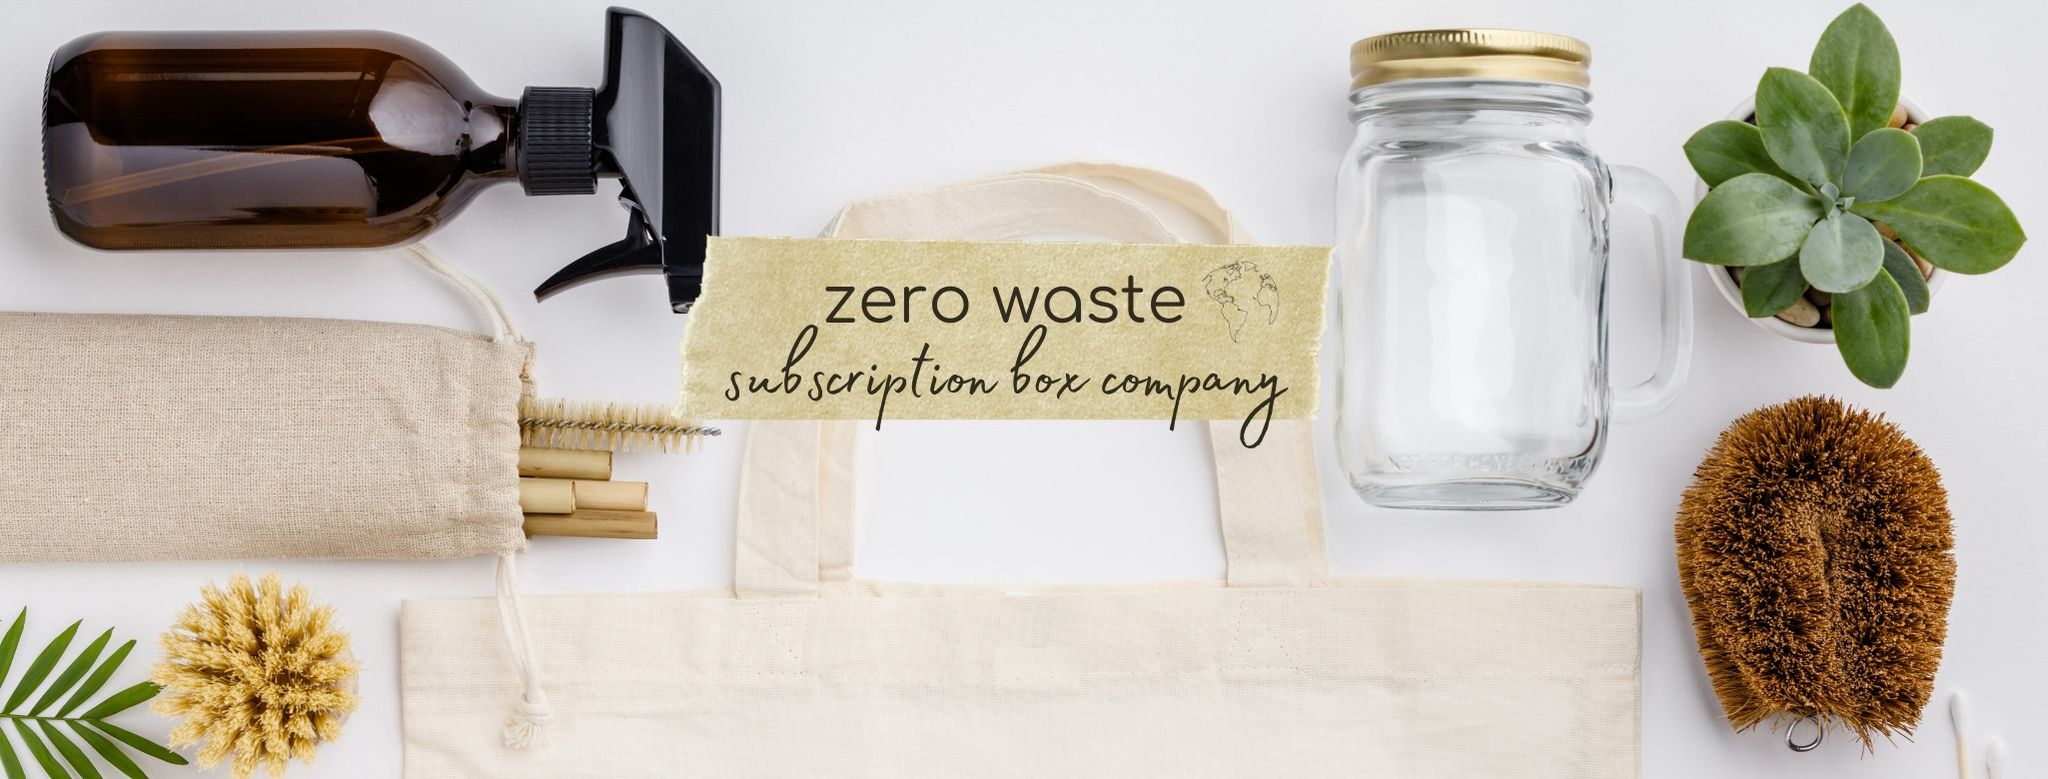 Art Supplies - Zero Waste Box™